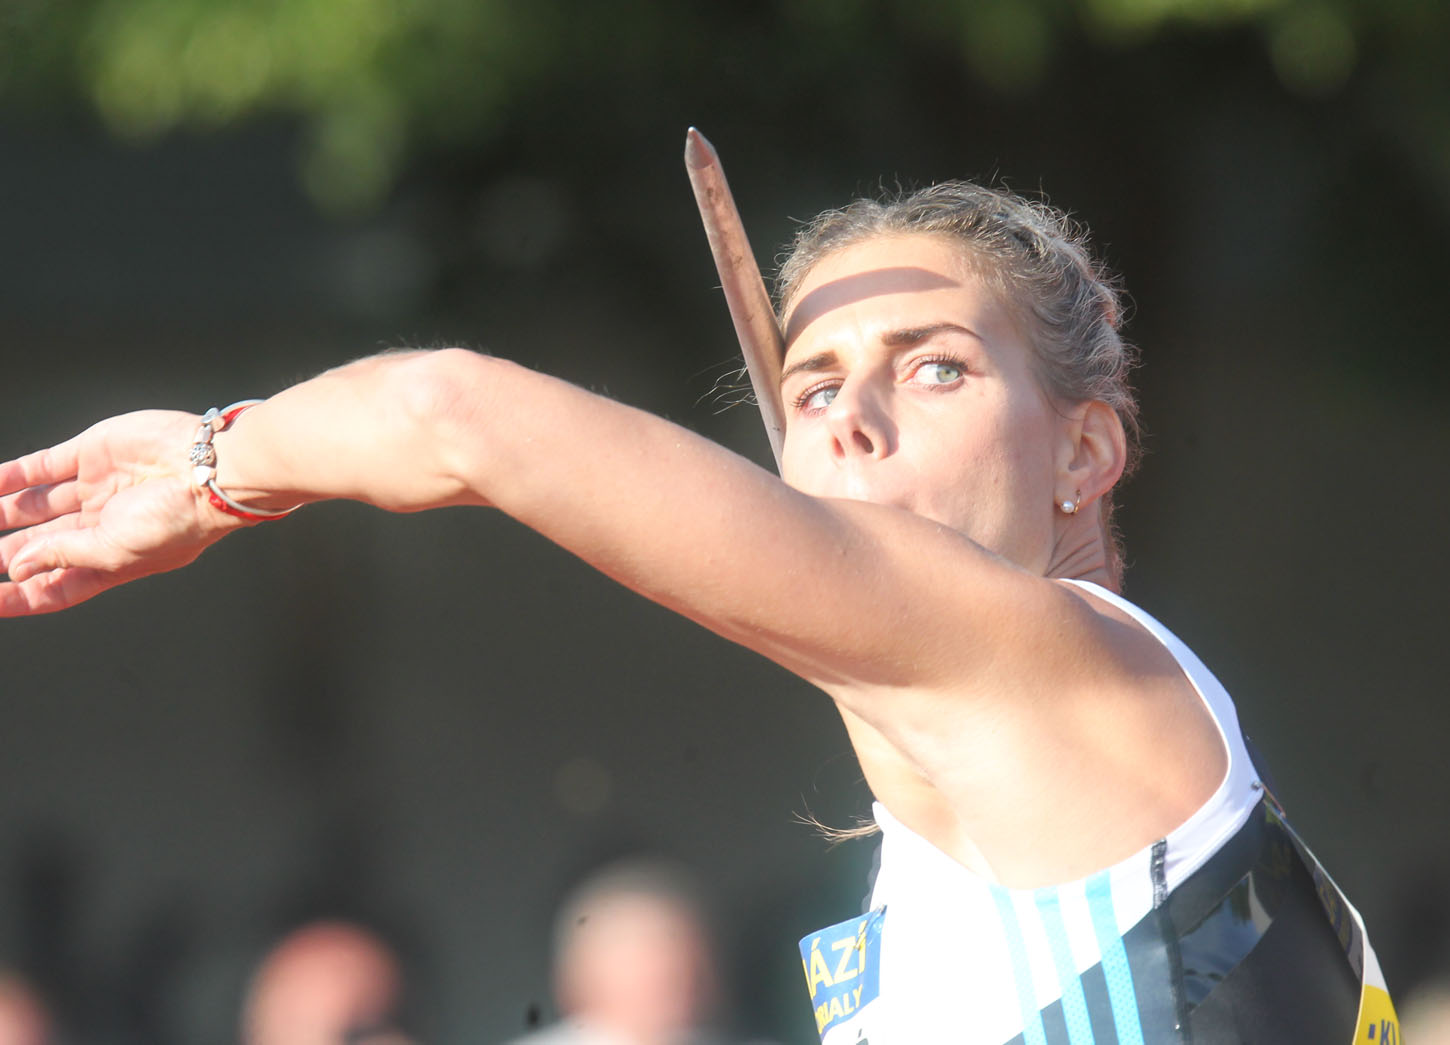 Ogrodníková zahájila sezonu výkonem 60,73 metru. V Rehlingenu skončila druhá